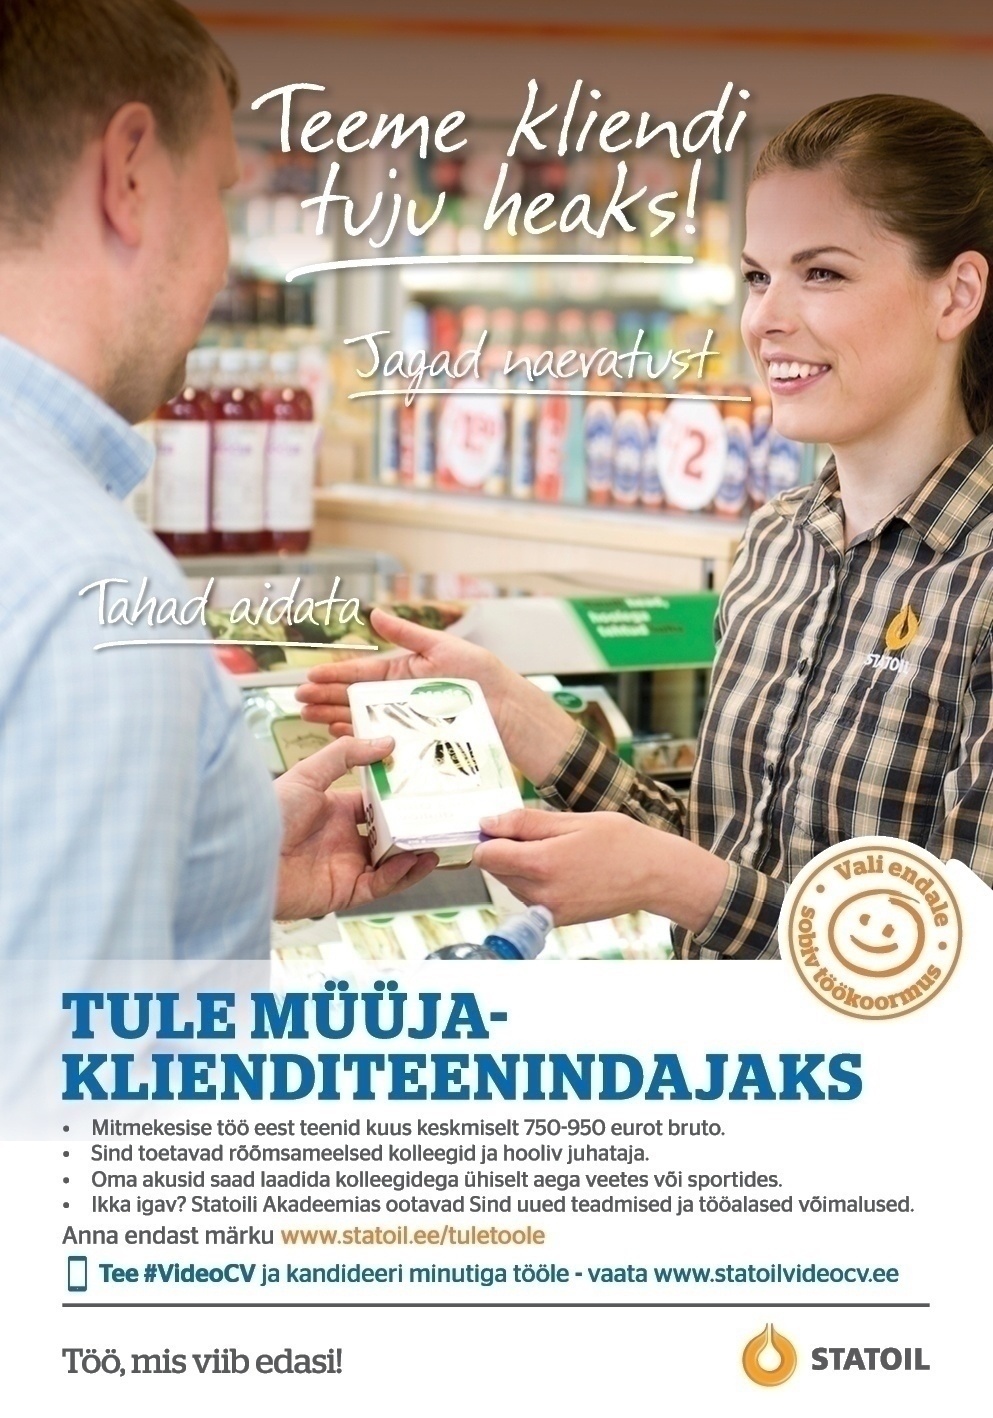 Circle K Eesti AS Müüja-klienditeenindaja Järve, Nõmme, Laagri teenindusjaamadesse